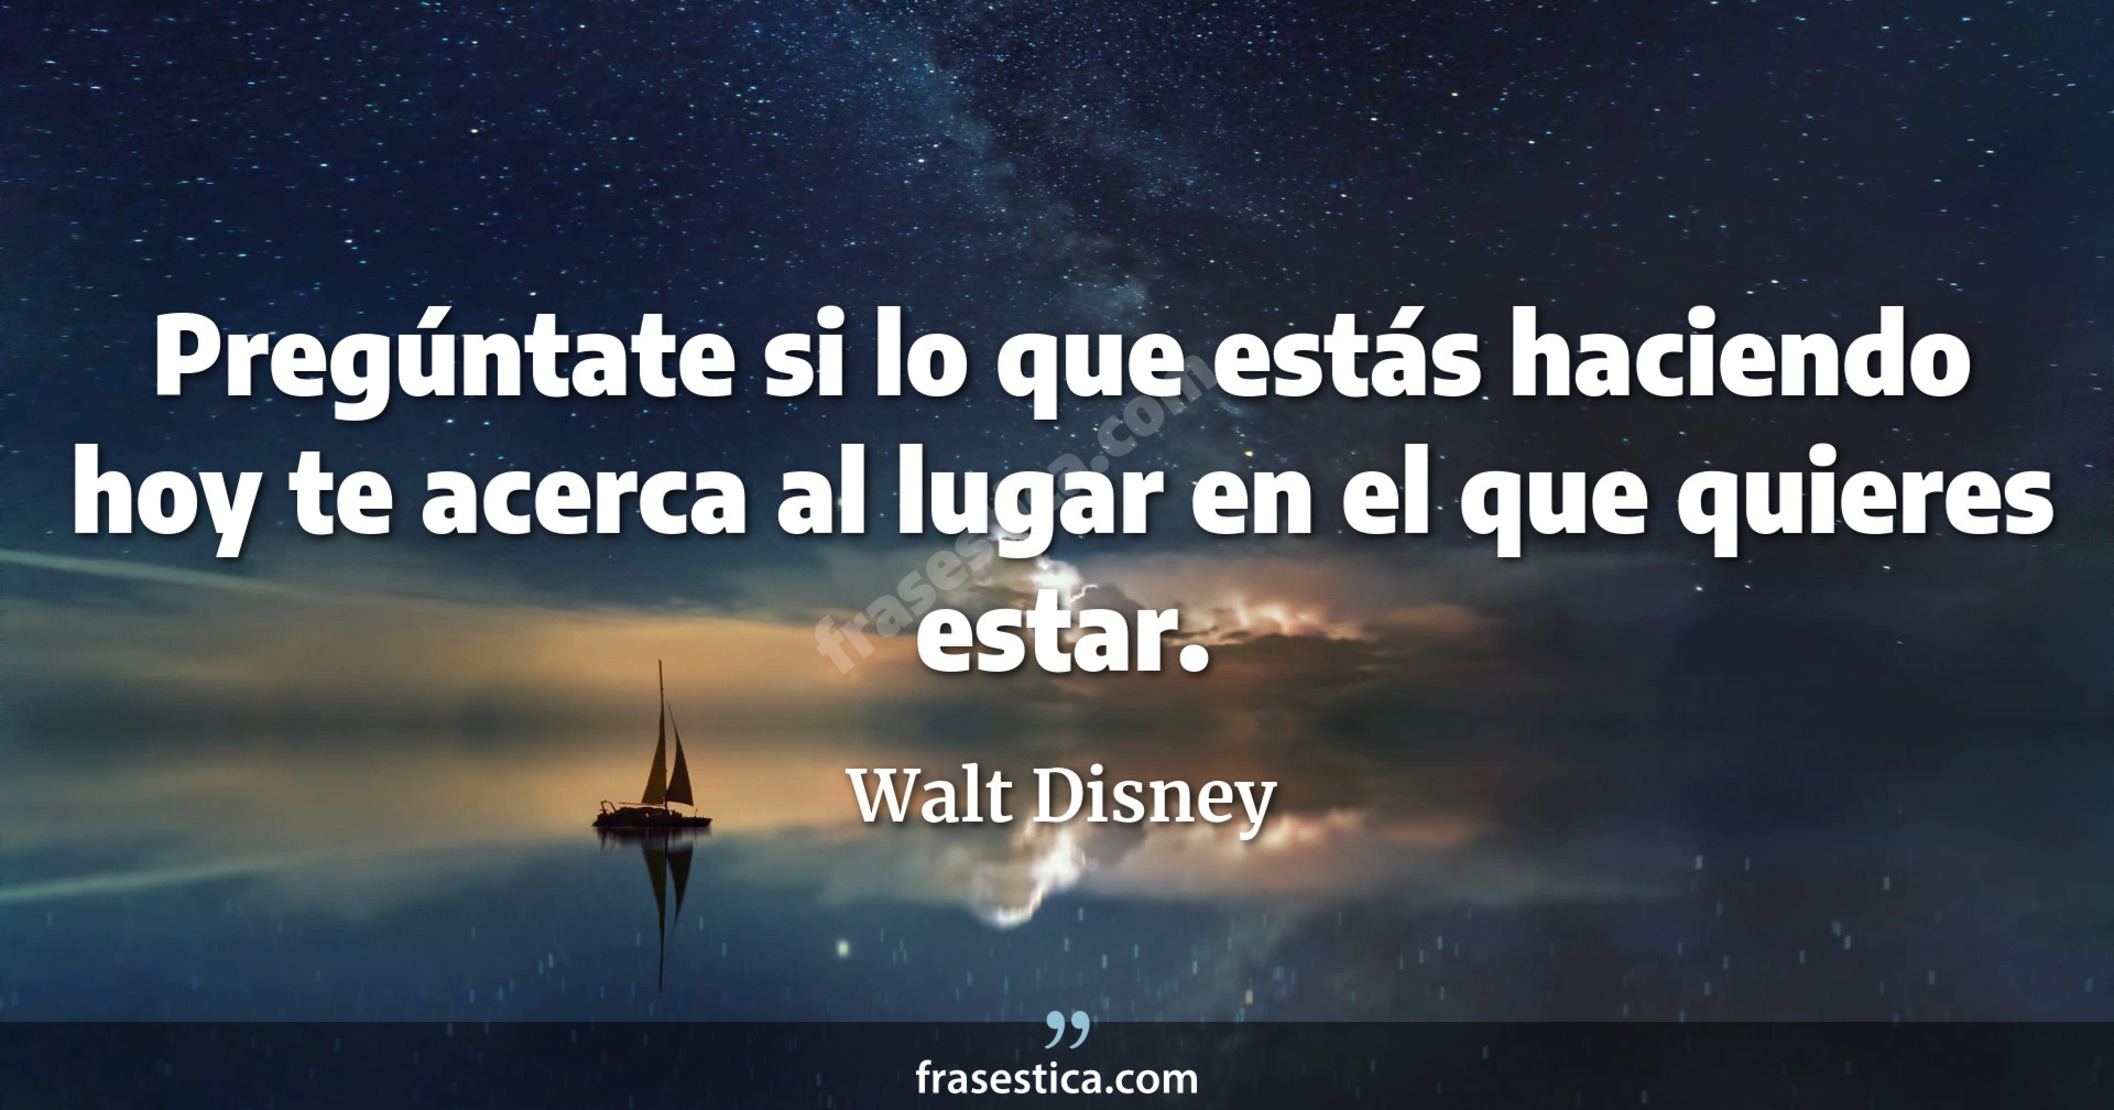 Pregúntate si lo que estás haciendo hoy te acerca al lugar en el que quieres estar. - Walt Disney